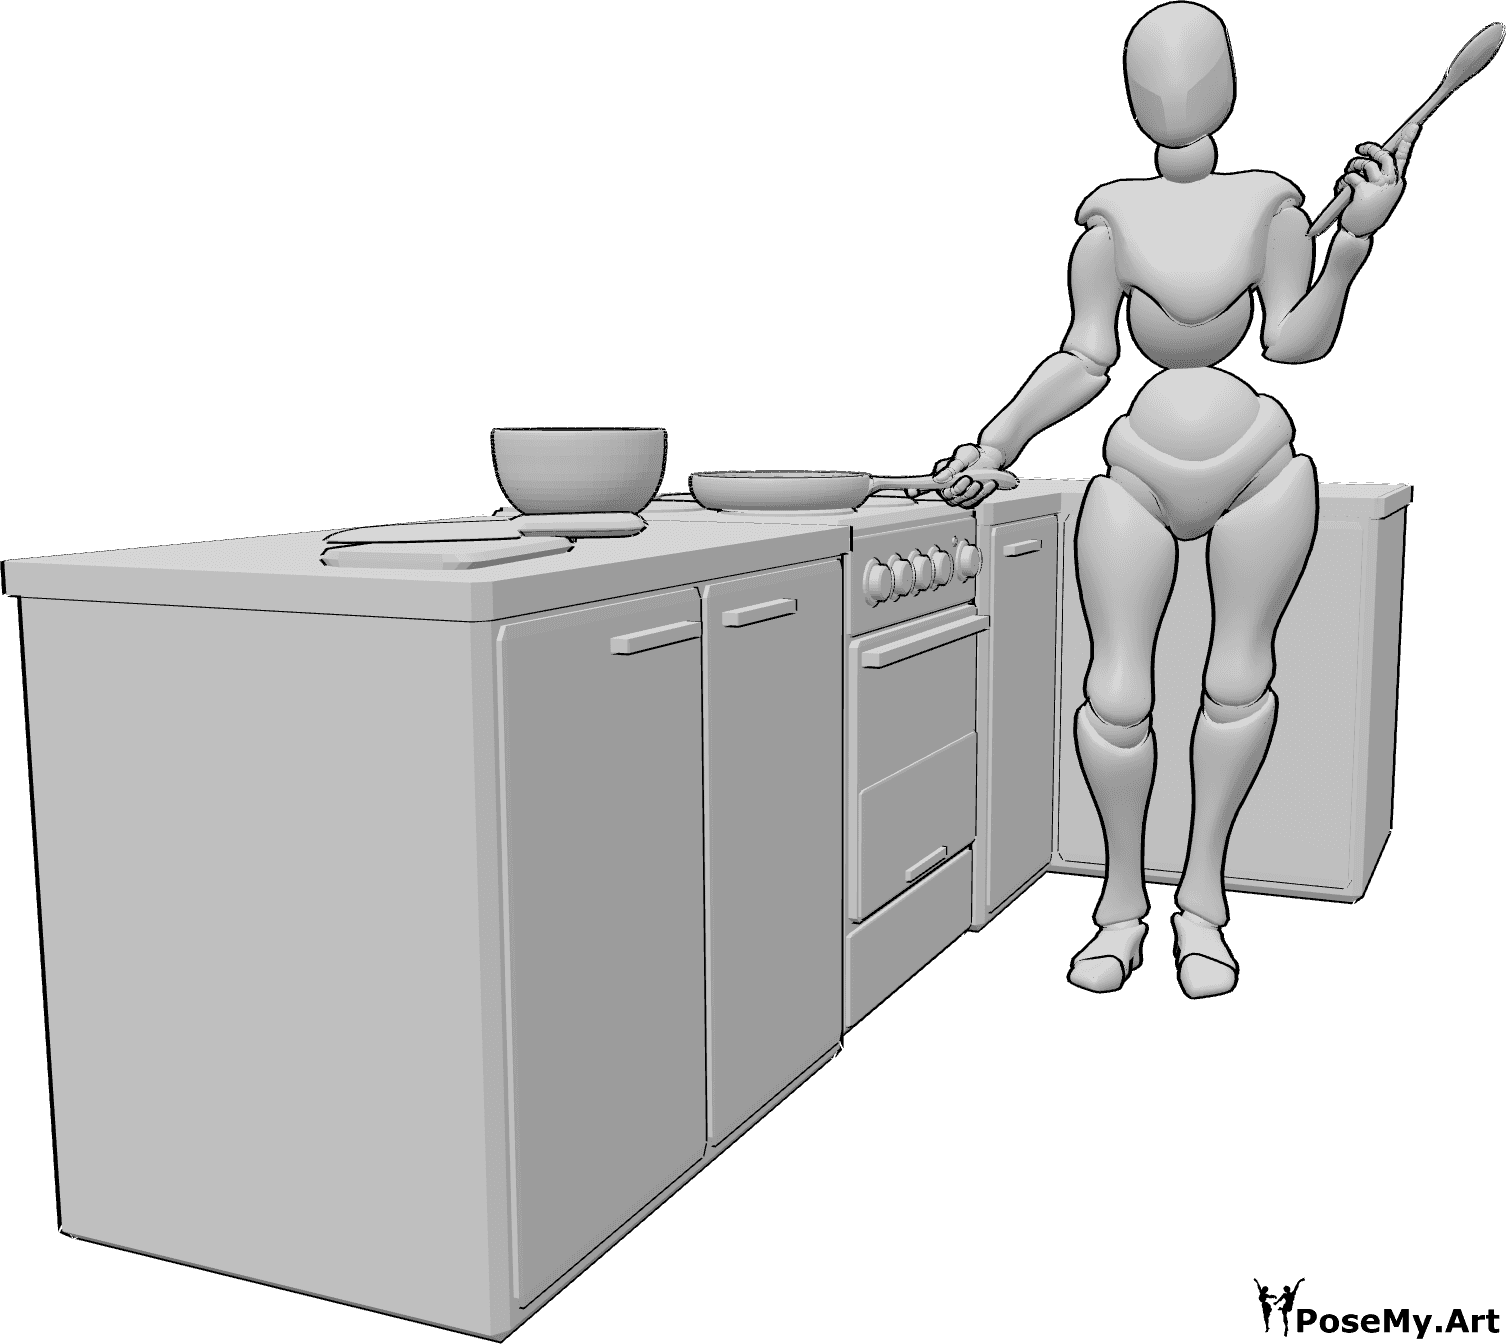 Riferimento alle pose- Posa del cucchiaio in cucina - Una donna in piedi in cucina, con una padella nella mano destra e un cucchiaio di legno nella mano sinistra.